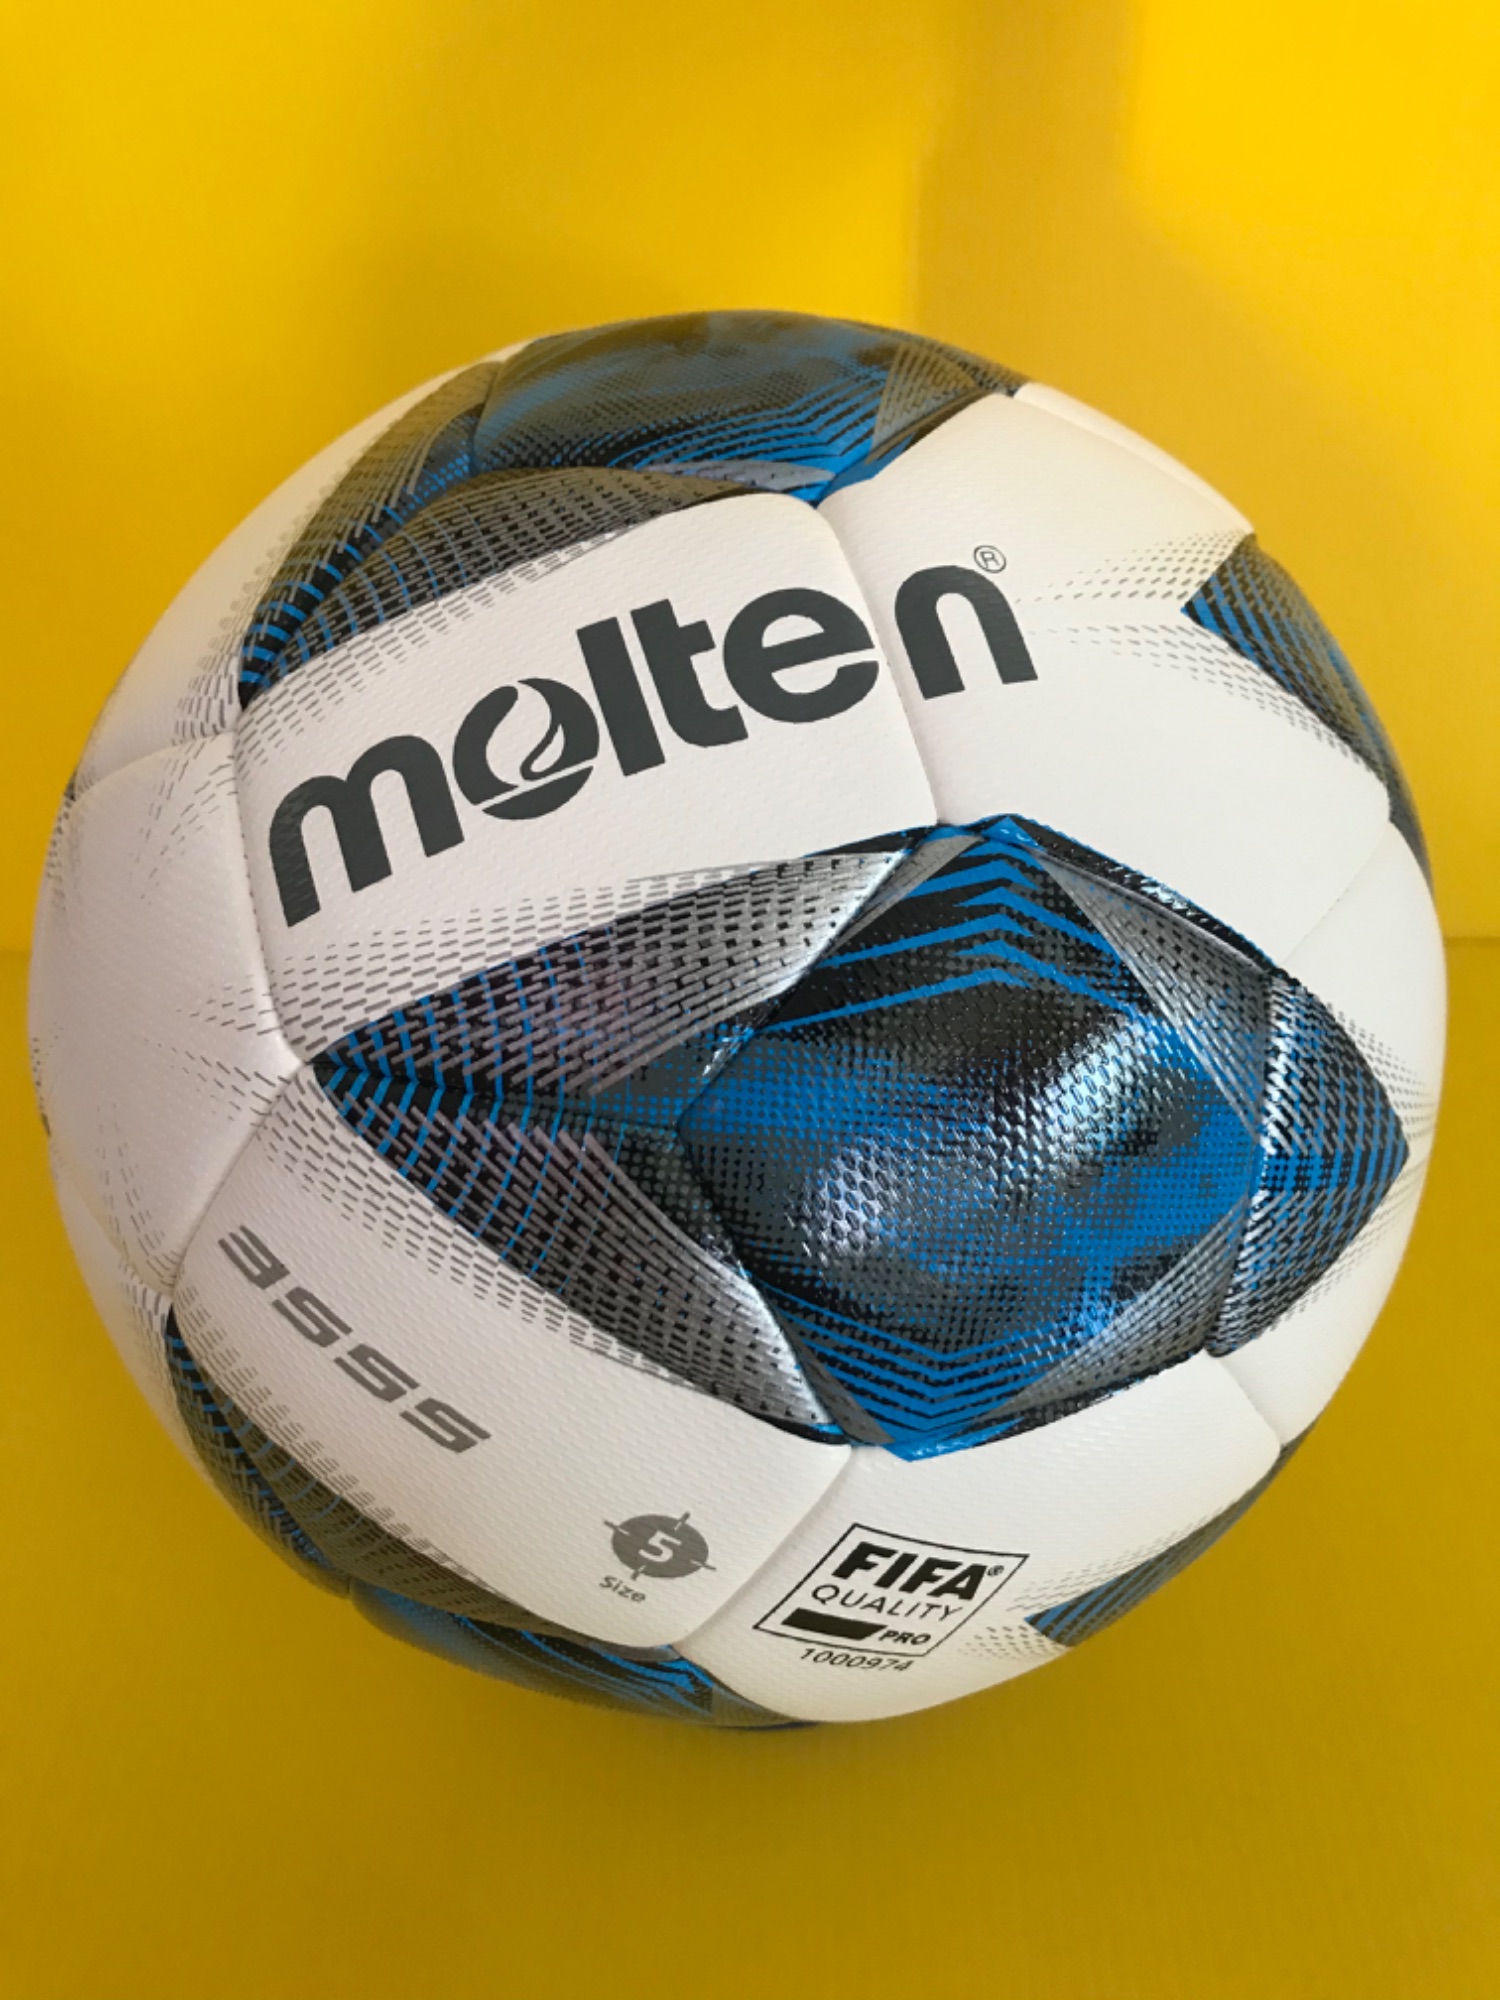 ลูกฟุตบอล ลูกบอล Molten F5A3555-K เบอร์5 ลูกฟุตบอลหนัง PU หนังเย็บ ของแท้ 100% ใช้แข่งขัน